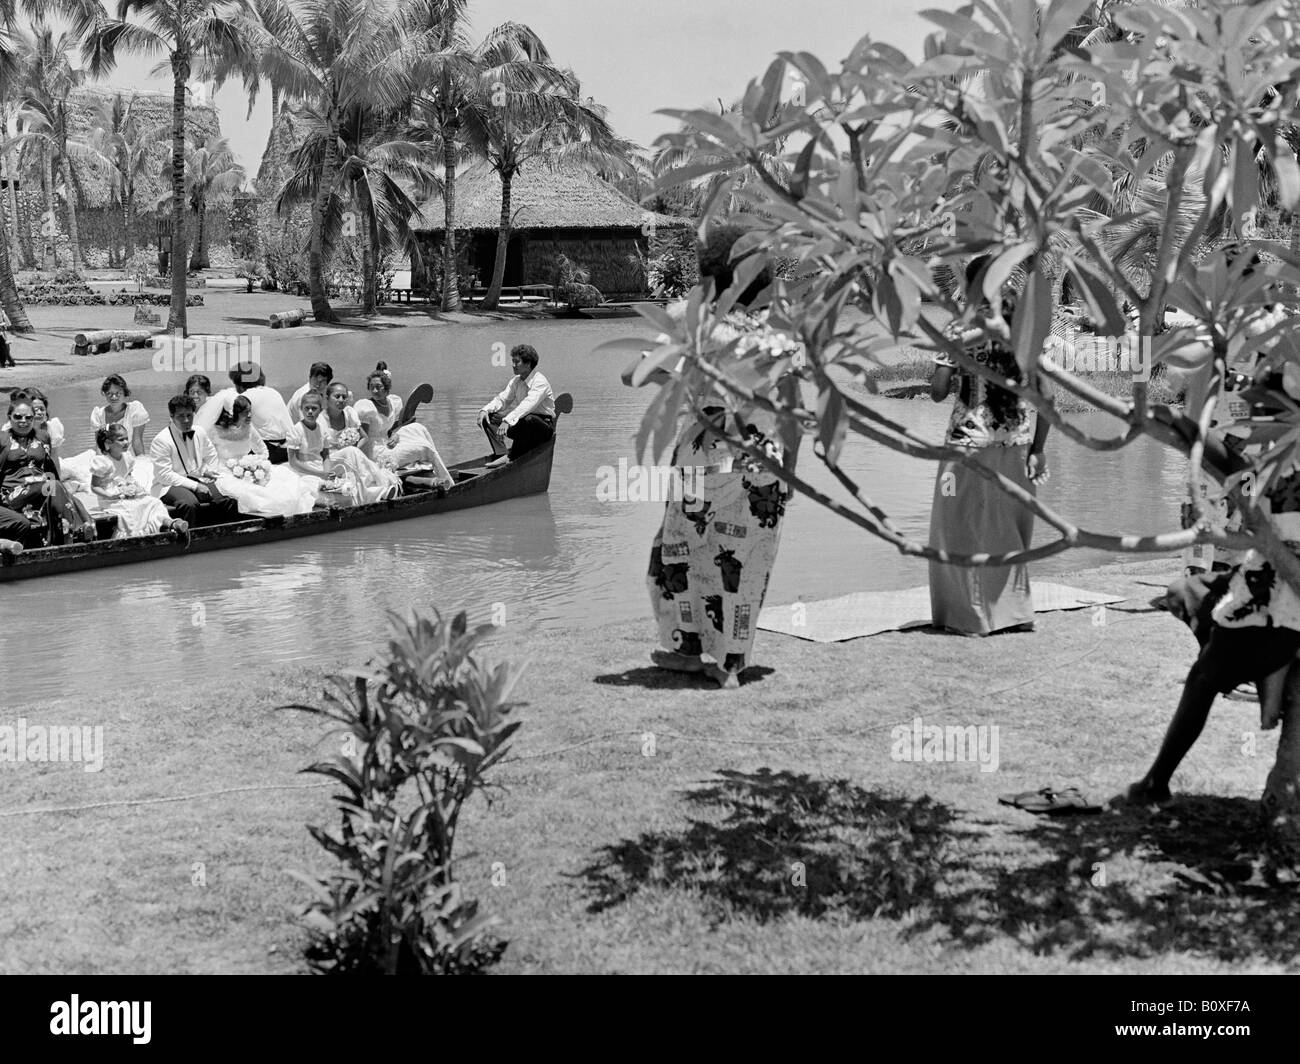 Festa di nozze in a doppio scafo canoa villaggio Fijiano Centro Culturale Polinesiano 1976 Foto Stock